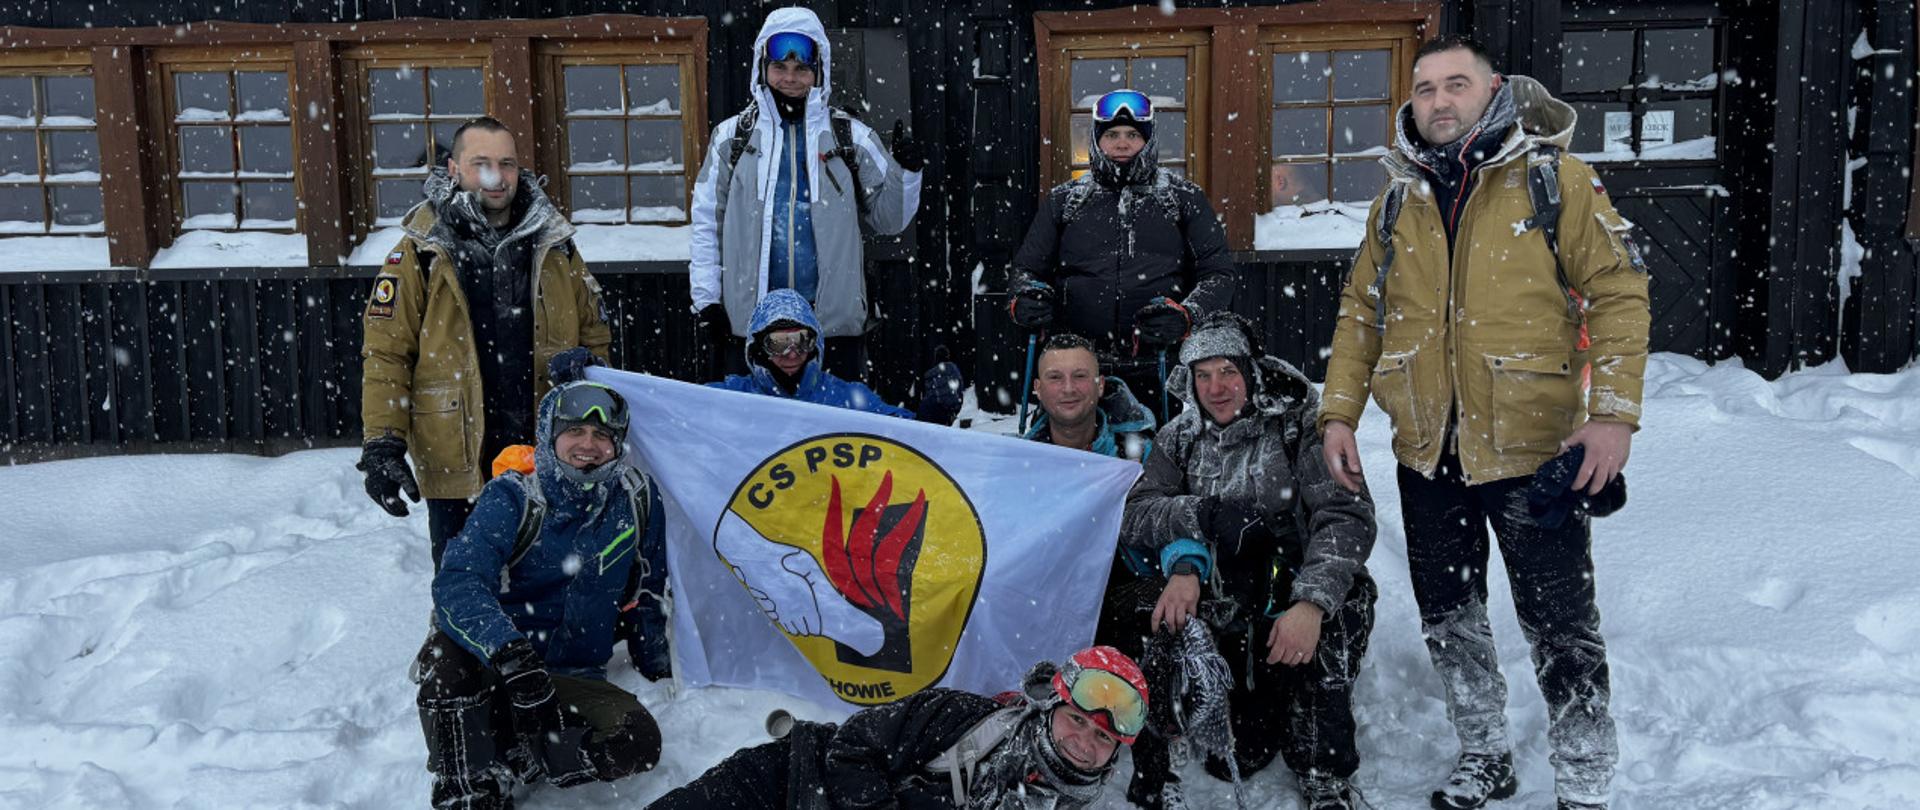 Zimowa sceneria, grupa dziewięciu osób z rozwinięta flagą z logo CS PSP, na pamiątkowym zdjęciu na tle schroniska "Samotnia"